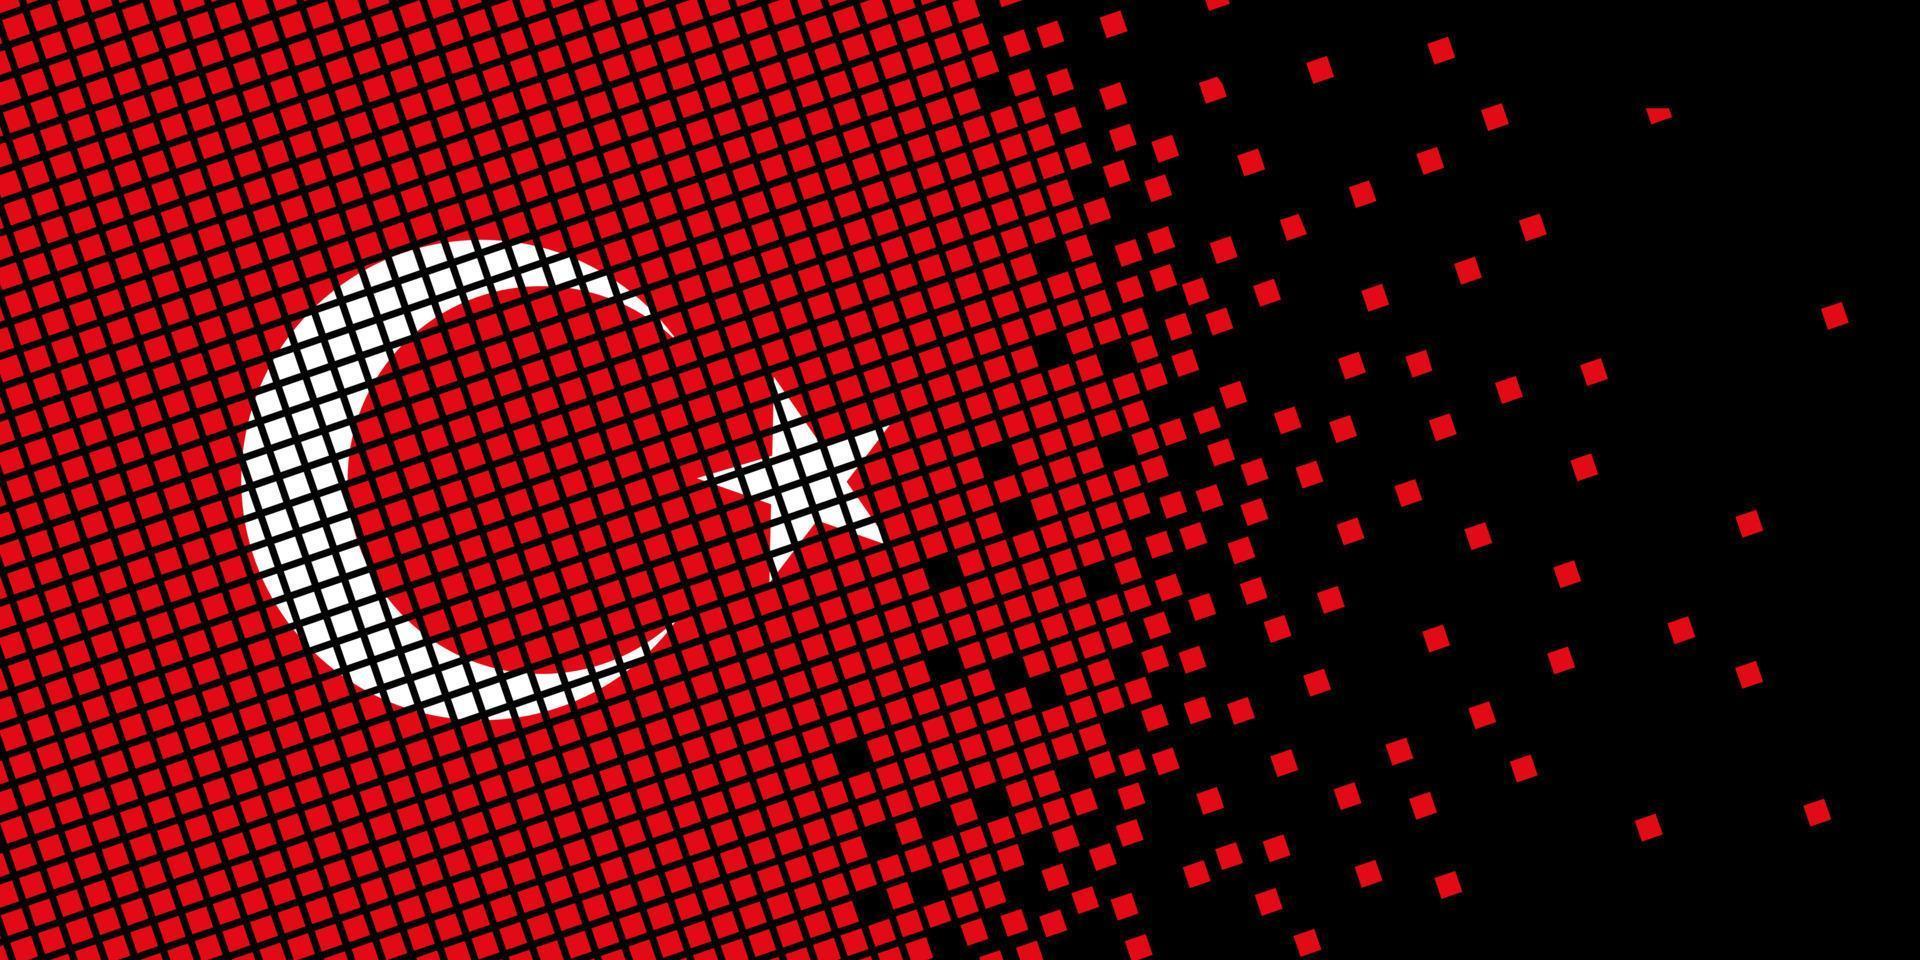 arte de píxeles con bandera de Turquía. los puntos de píxeles crecen concentrándose dentro de la bandera. los puntos dentro de la bandera de pavo son pixel art que representan la unidad y la independencia. bandera sobre fondo negro. vector